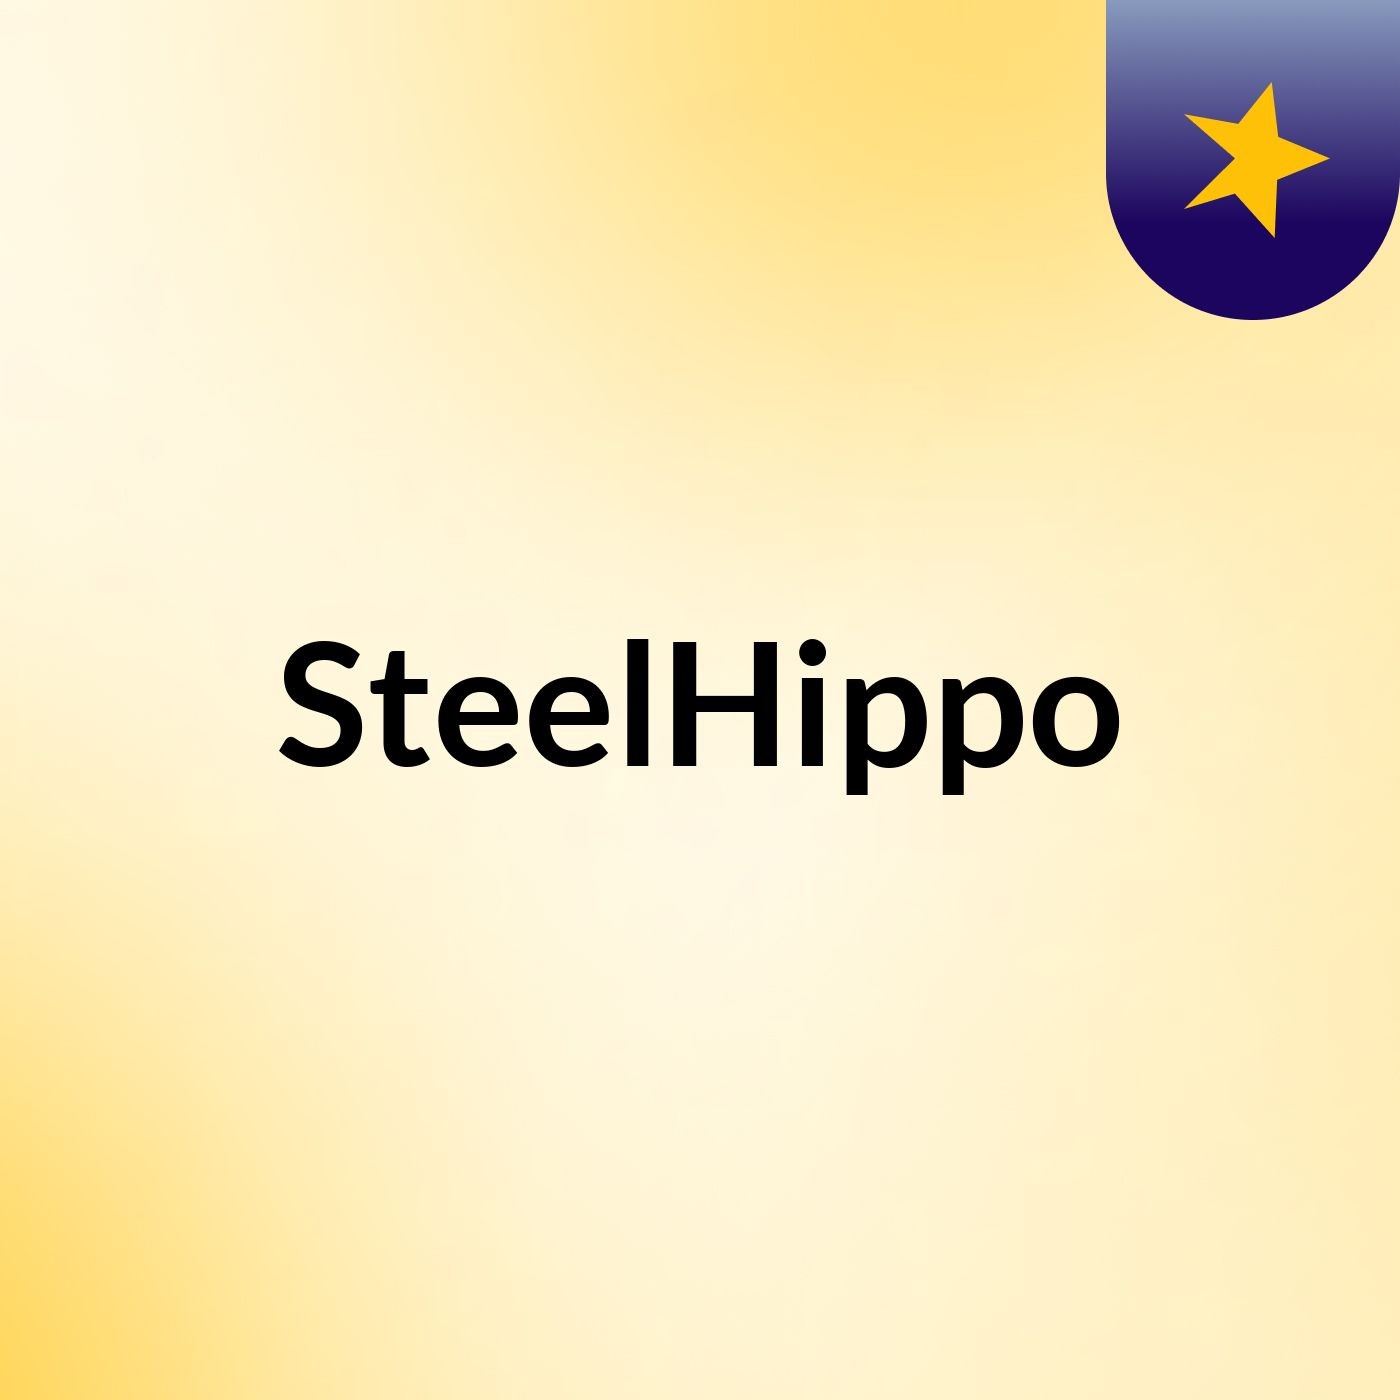 SteelHippo